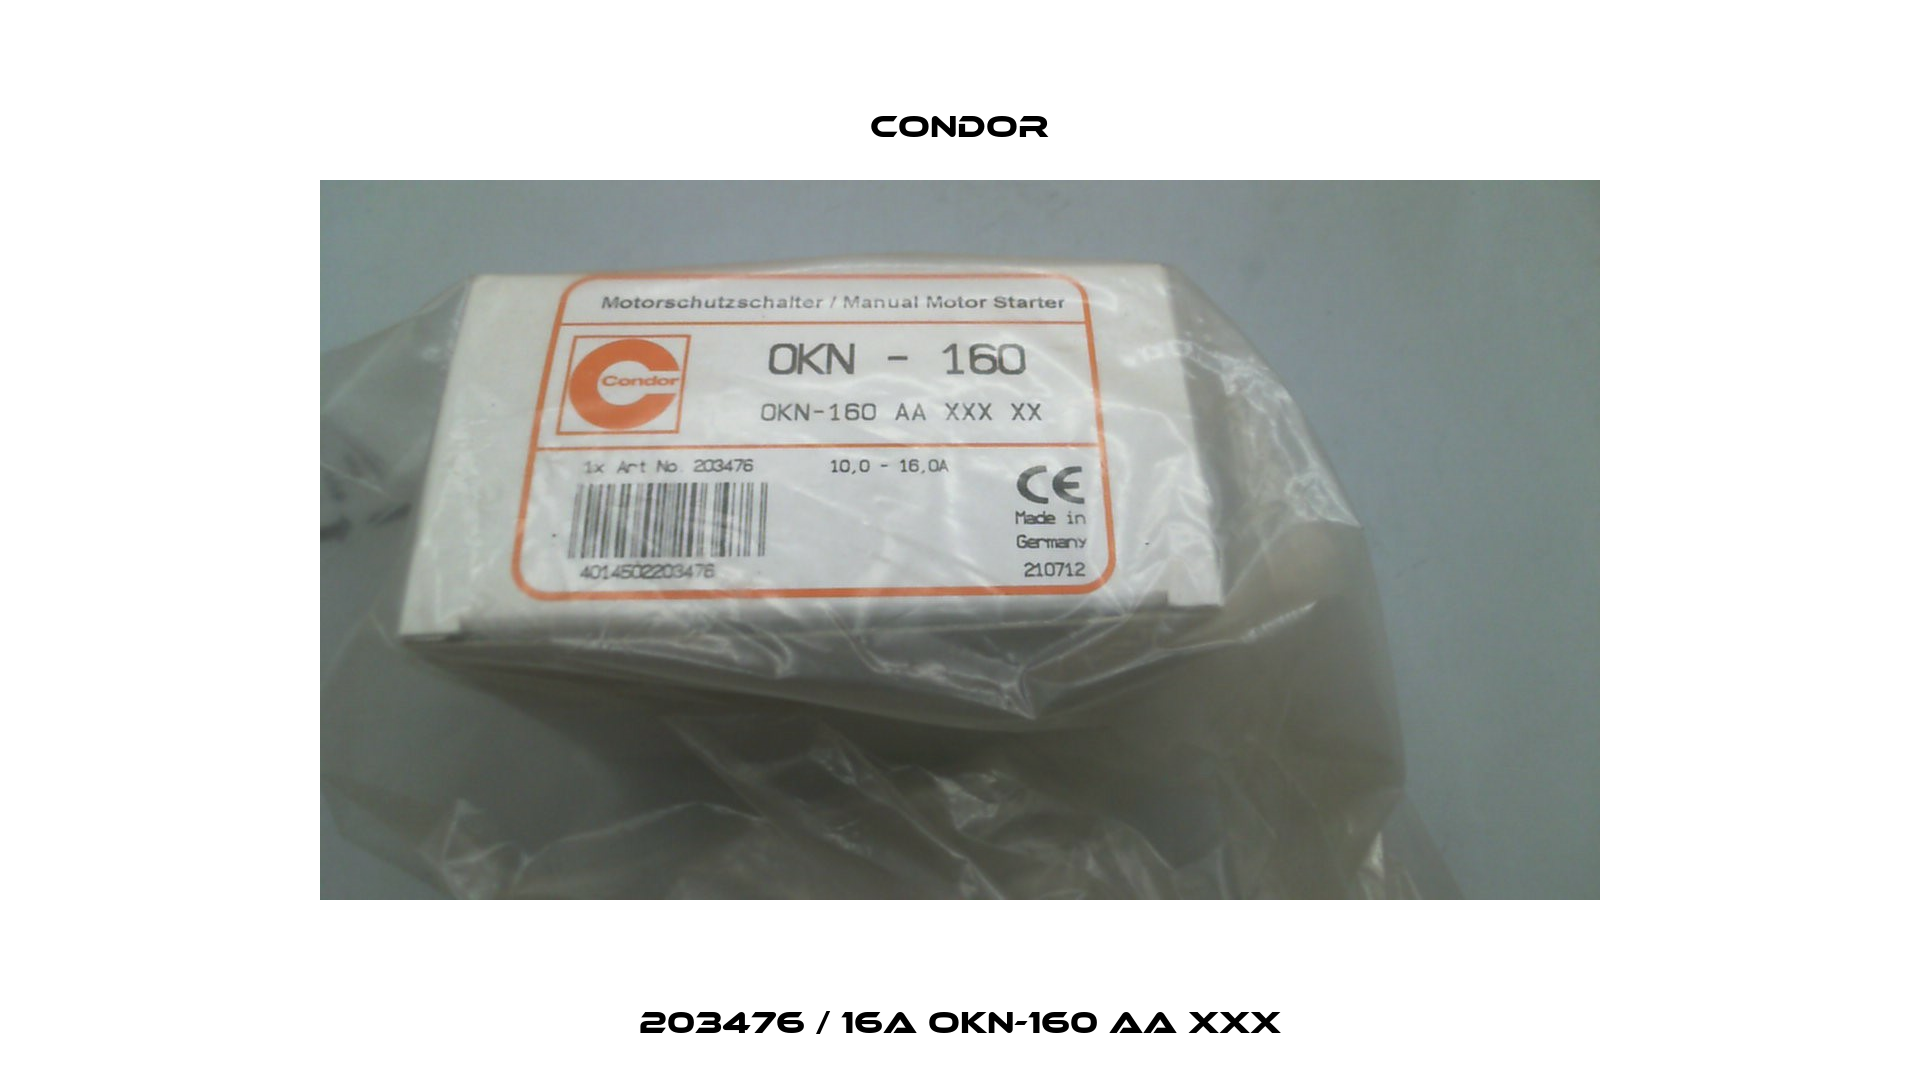 203476 / 16A OKN-160 AA XXX Condor